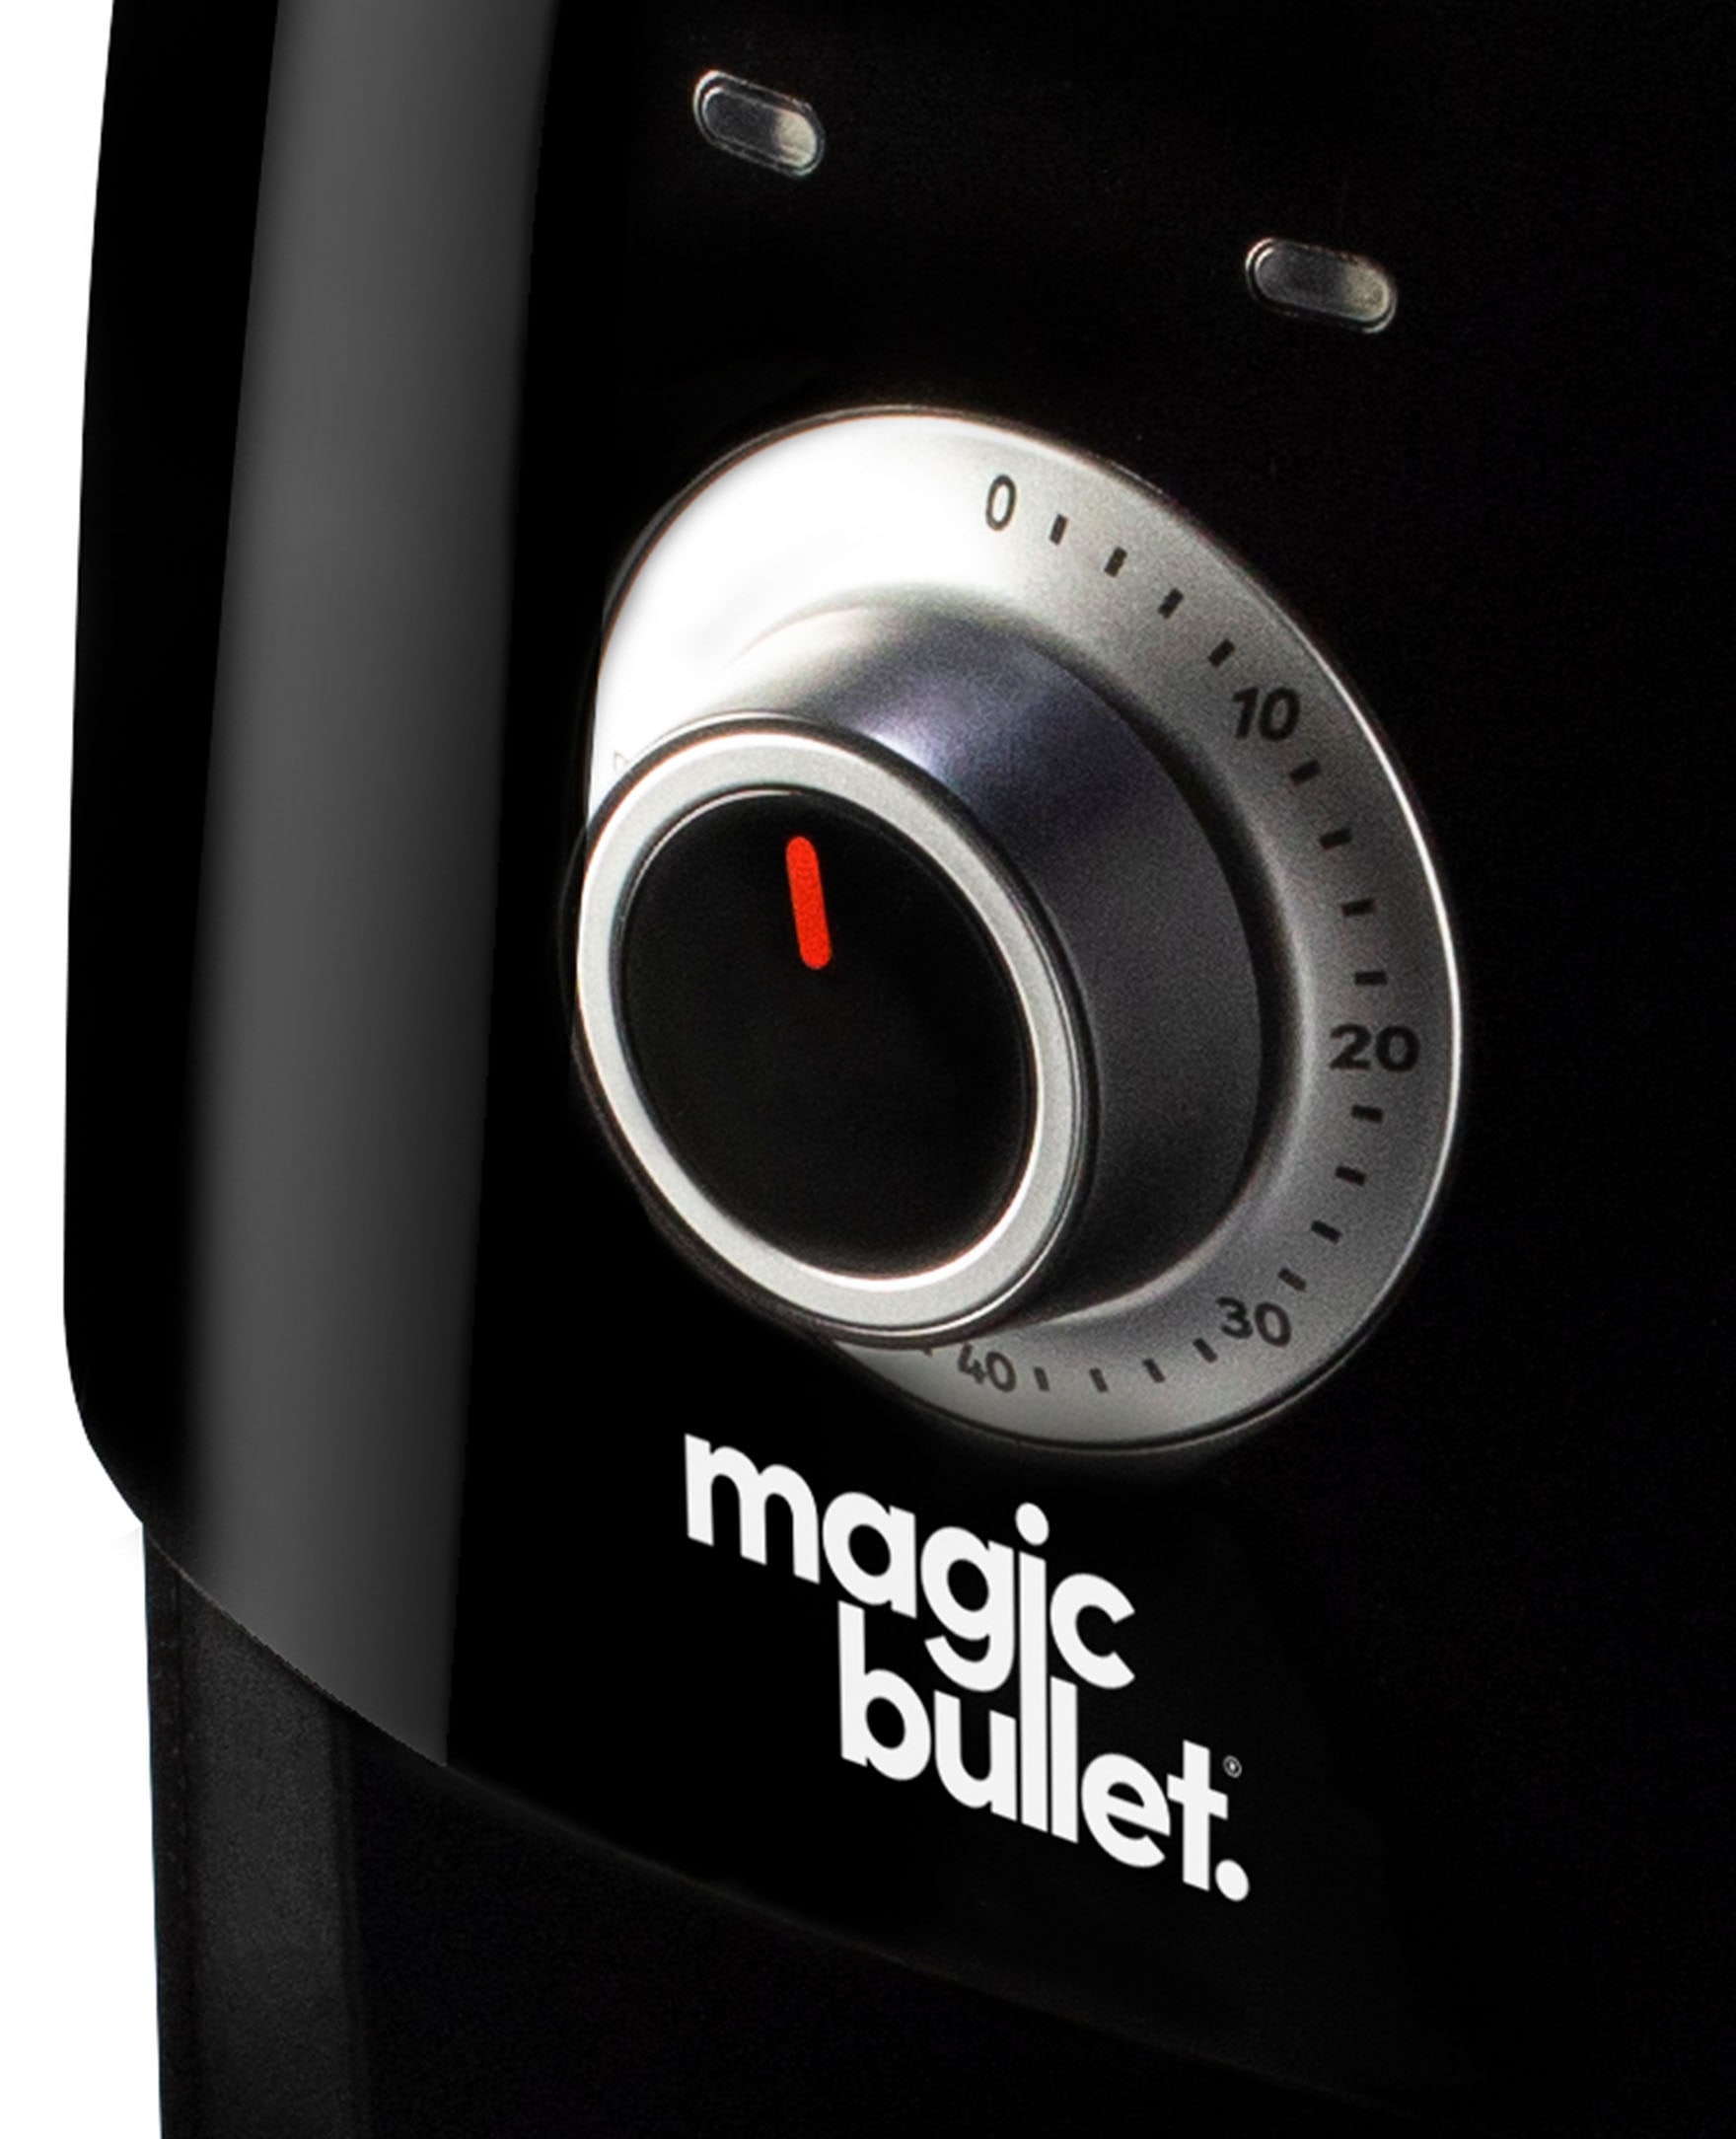  Magic Bullet MBA50100 Air Fryer, Black, 2.5 Quarts